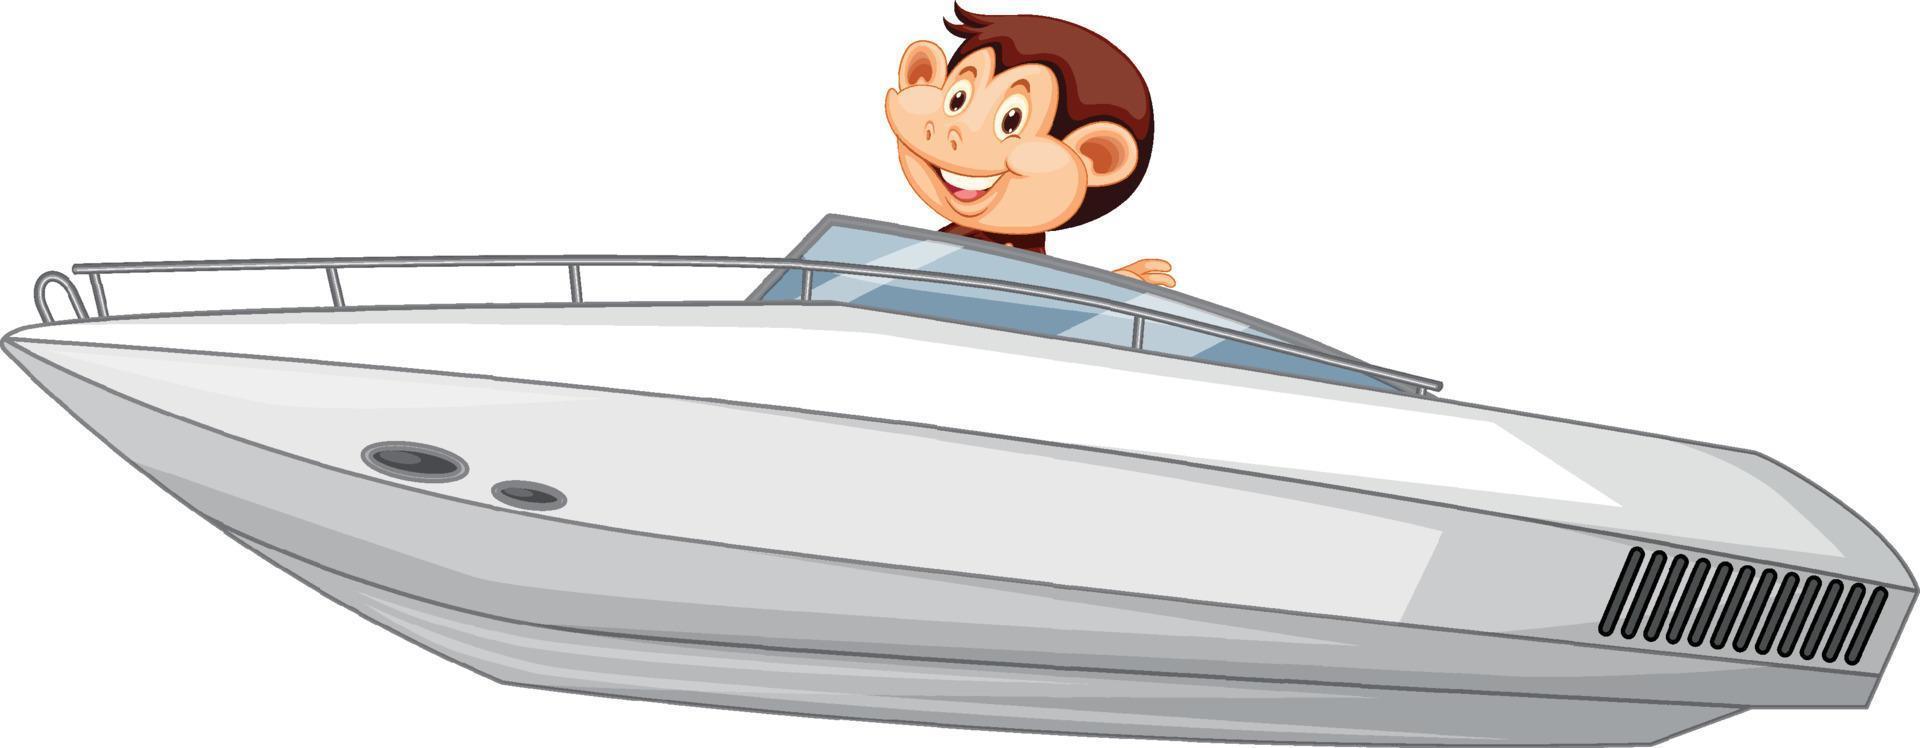 süßer Affe fährt Schnellboot auf weißem Hintergrund vektor